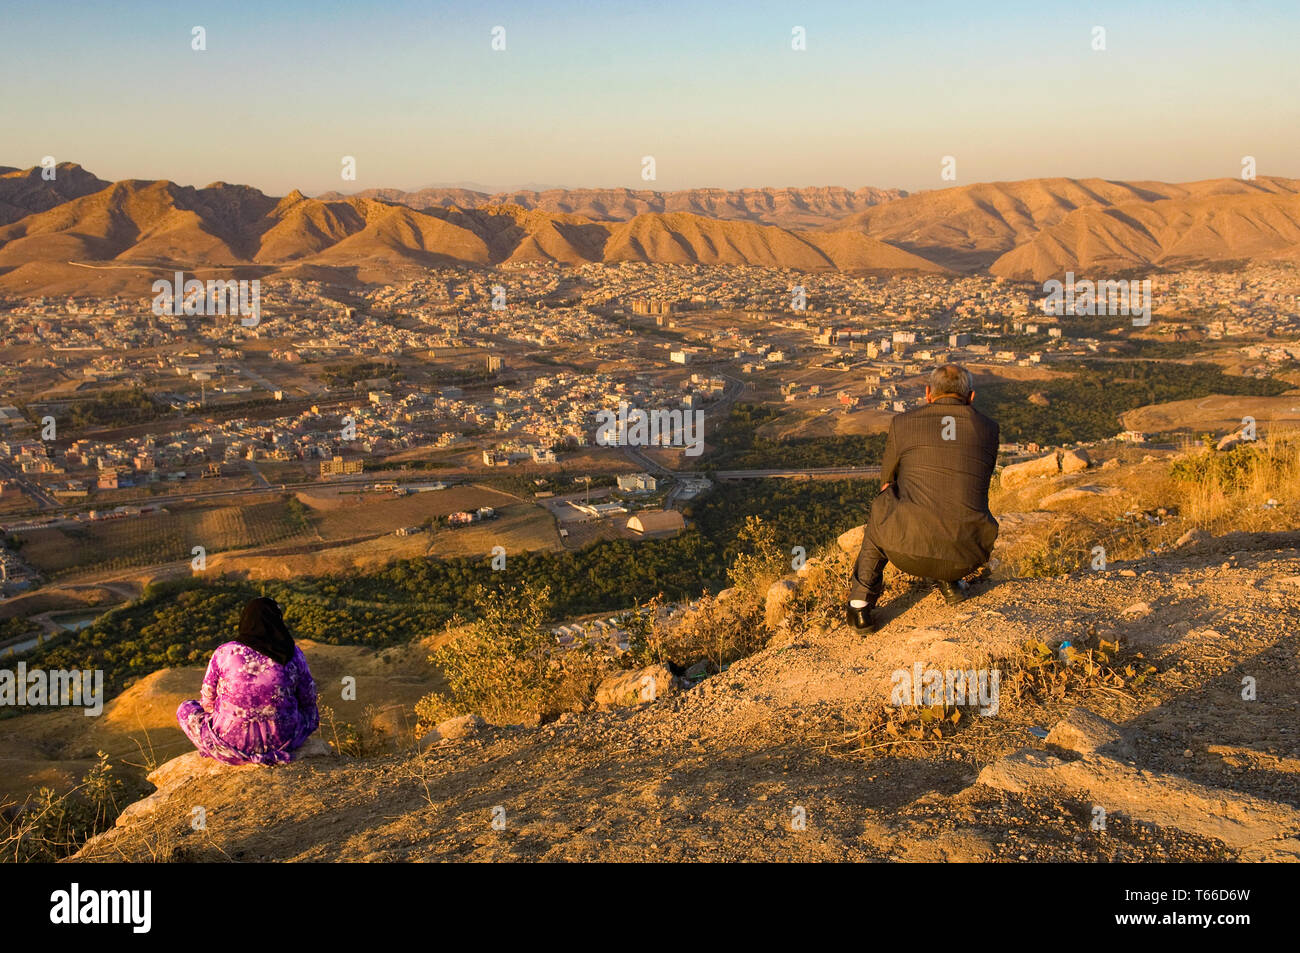 View of Dohuk, Kurdish region of Iraq Stock Photo